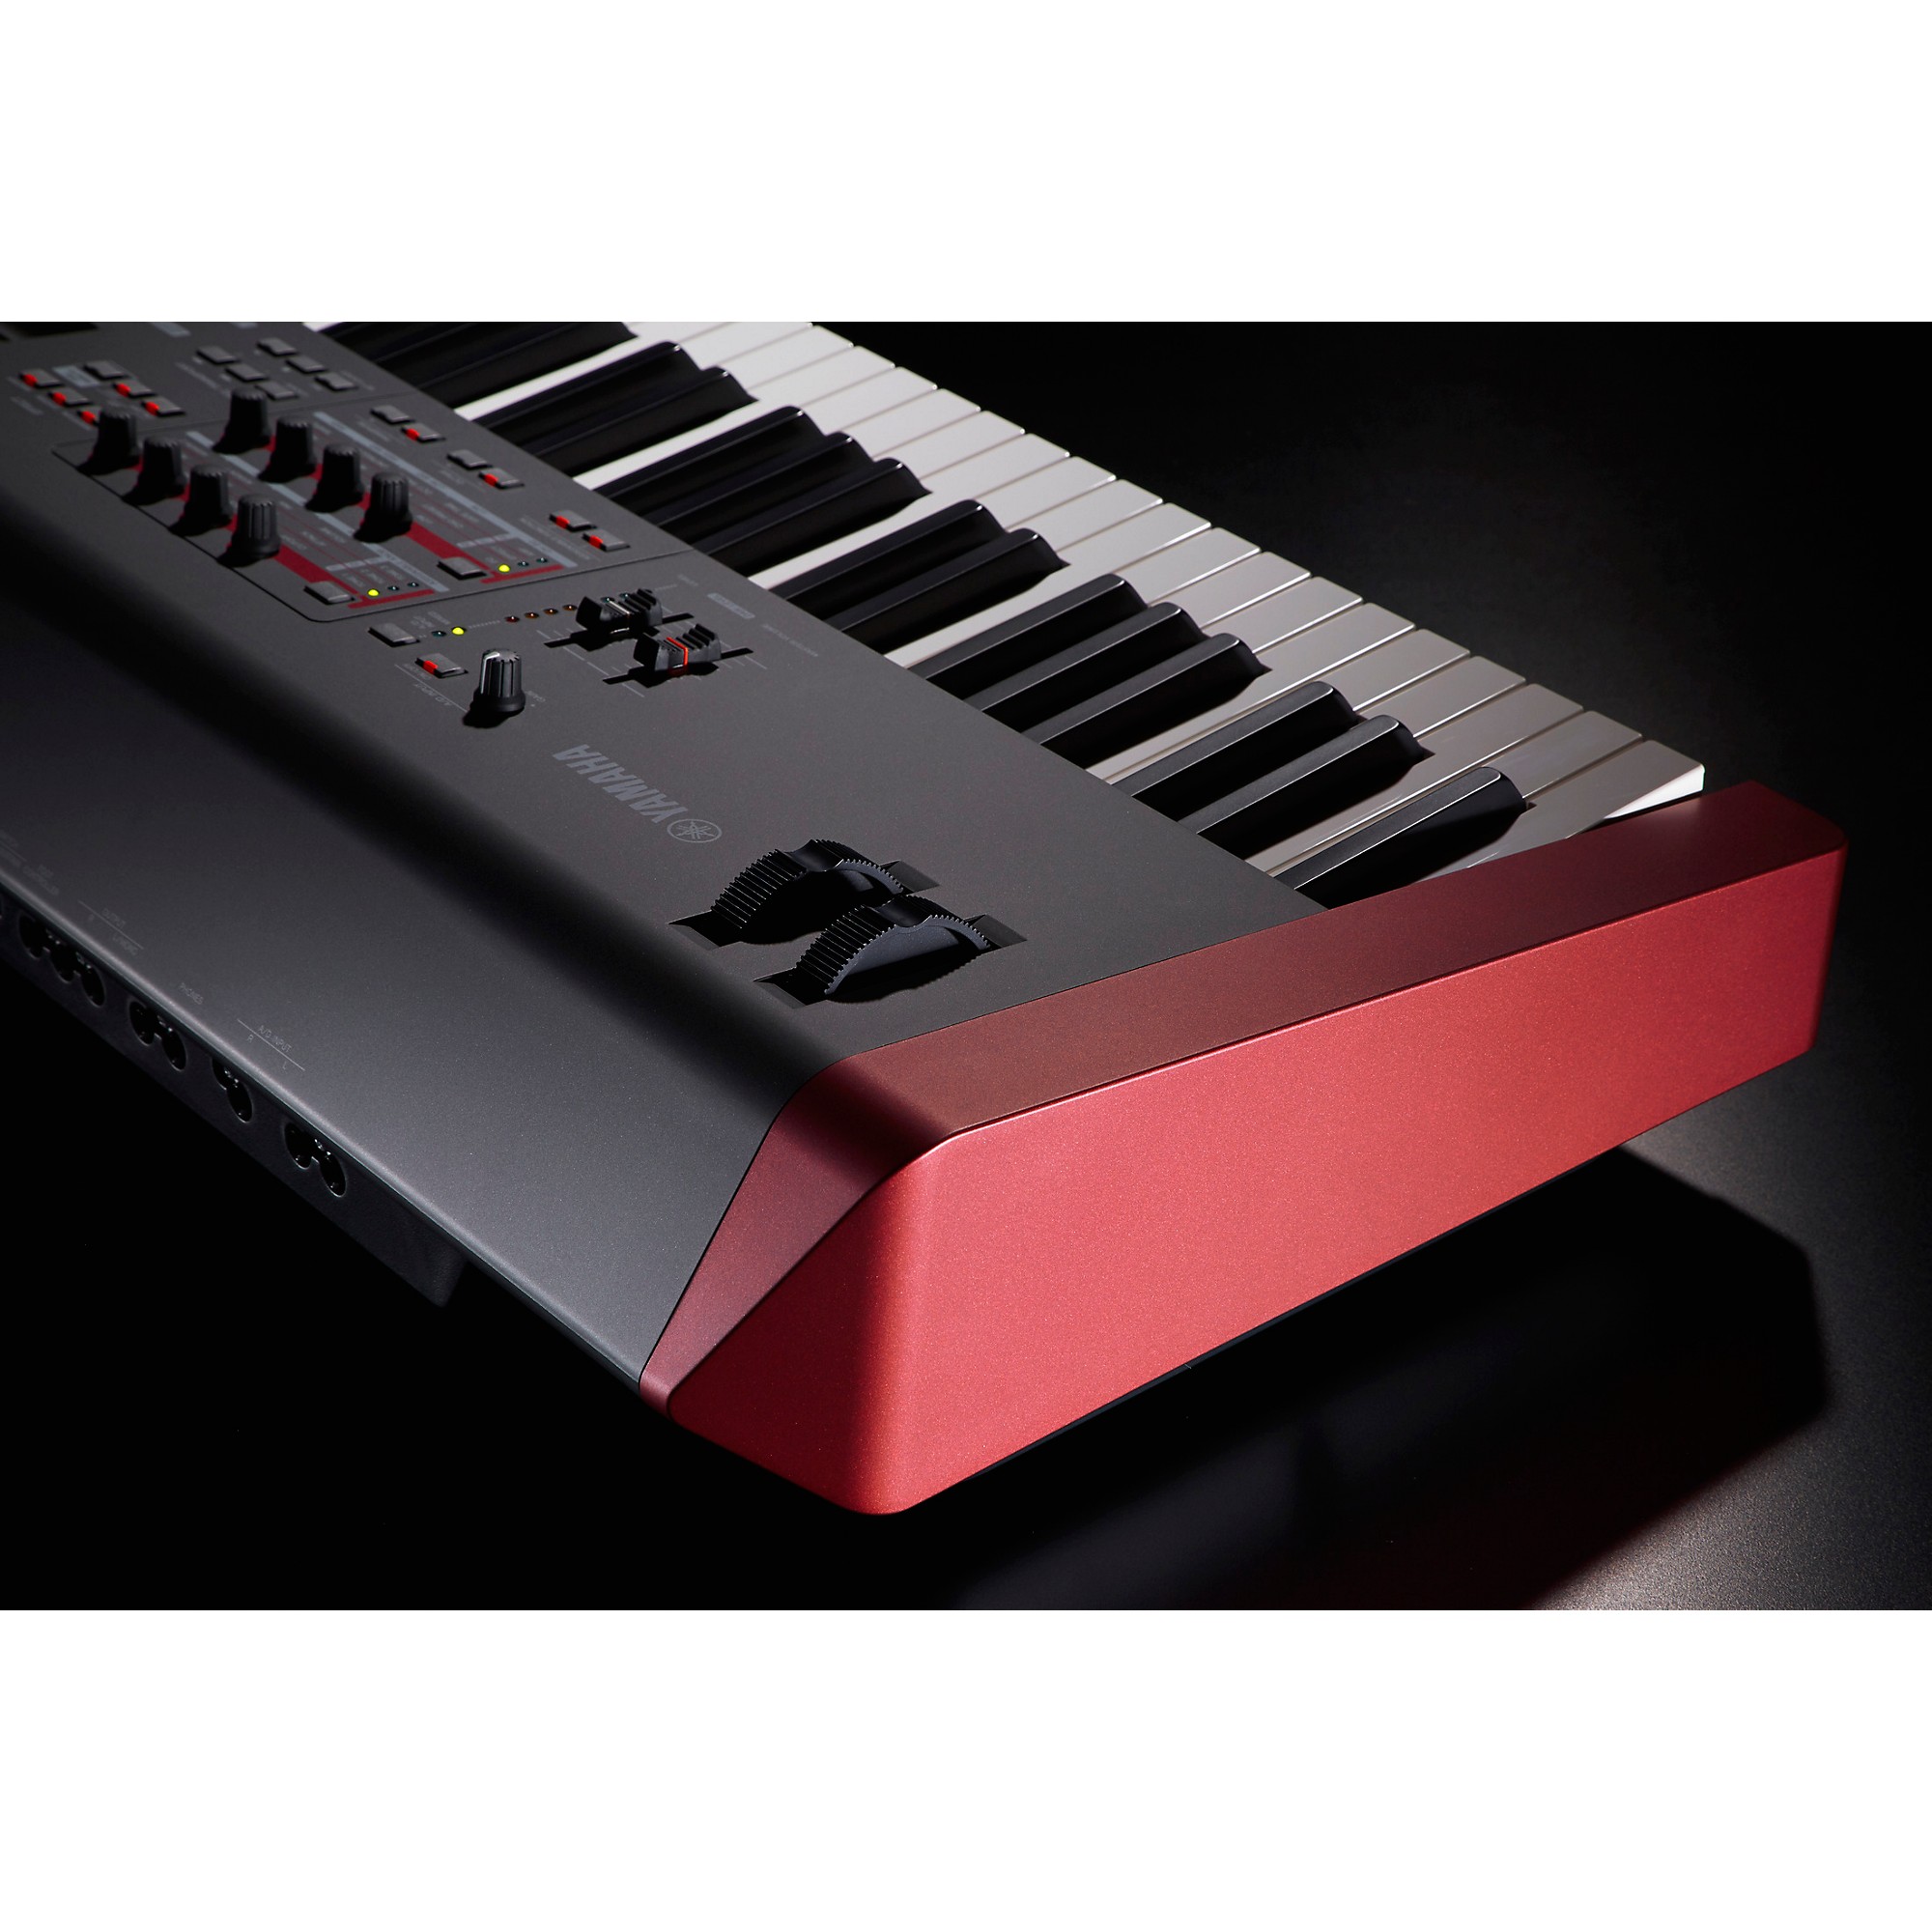 Yamaha MOXF8 88-Key Synthesizer Workstation | Guitar Center